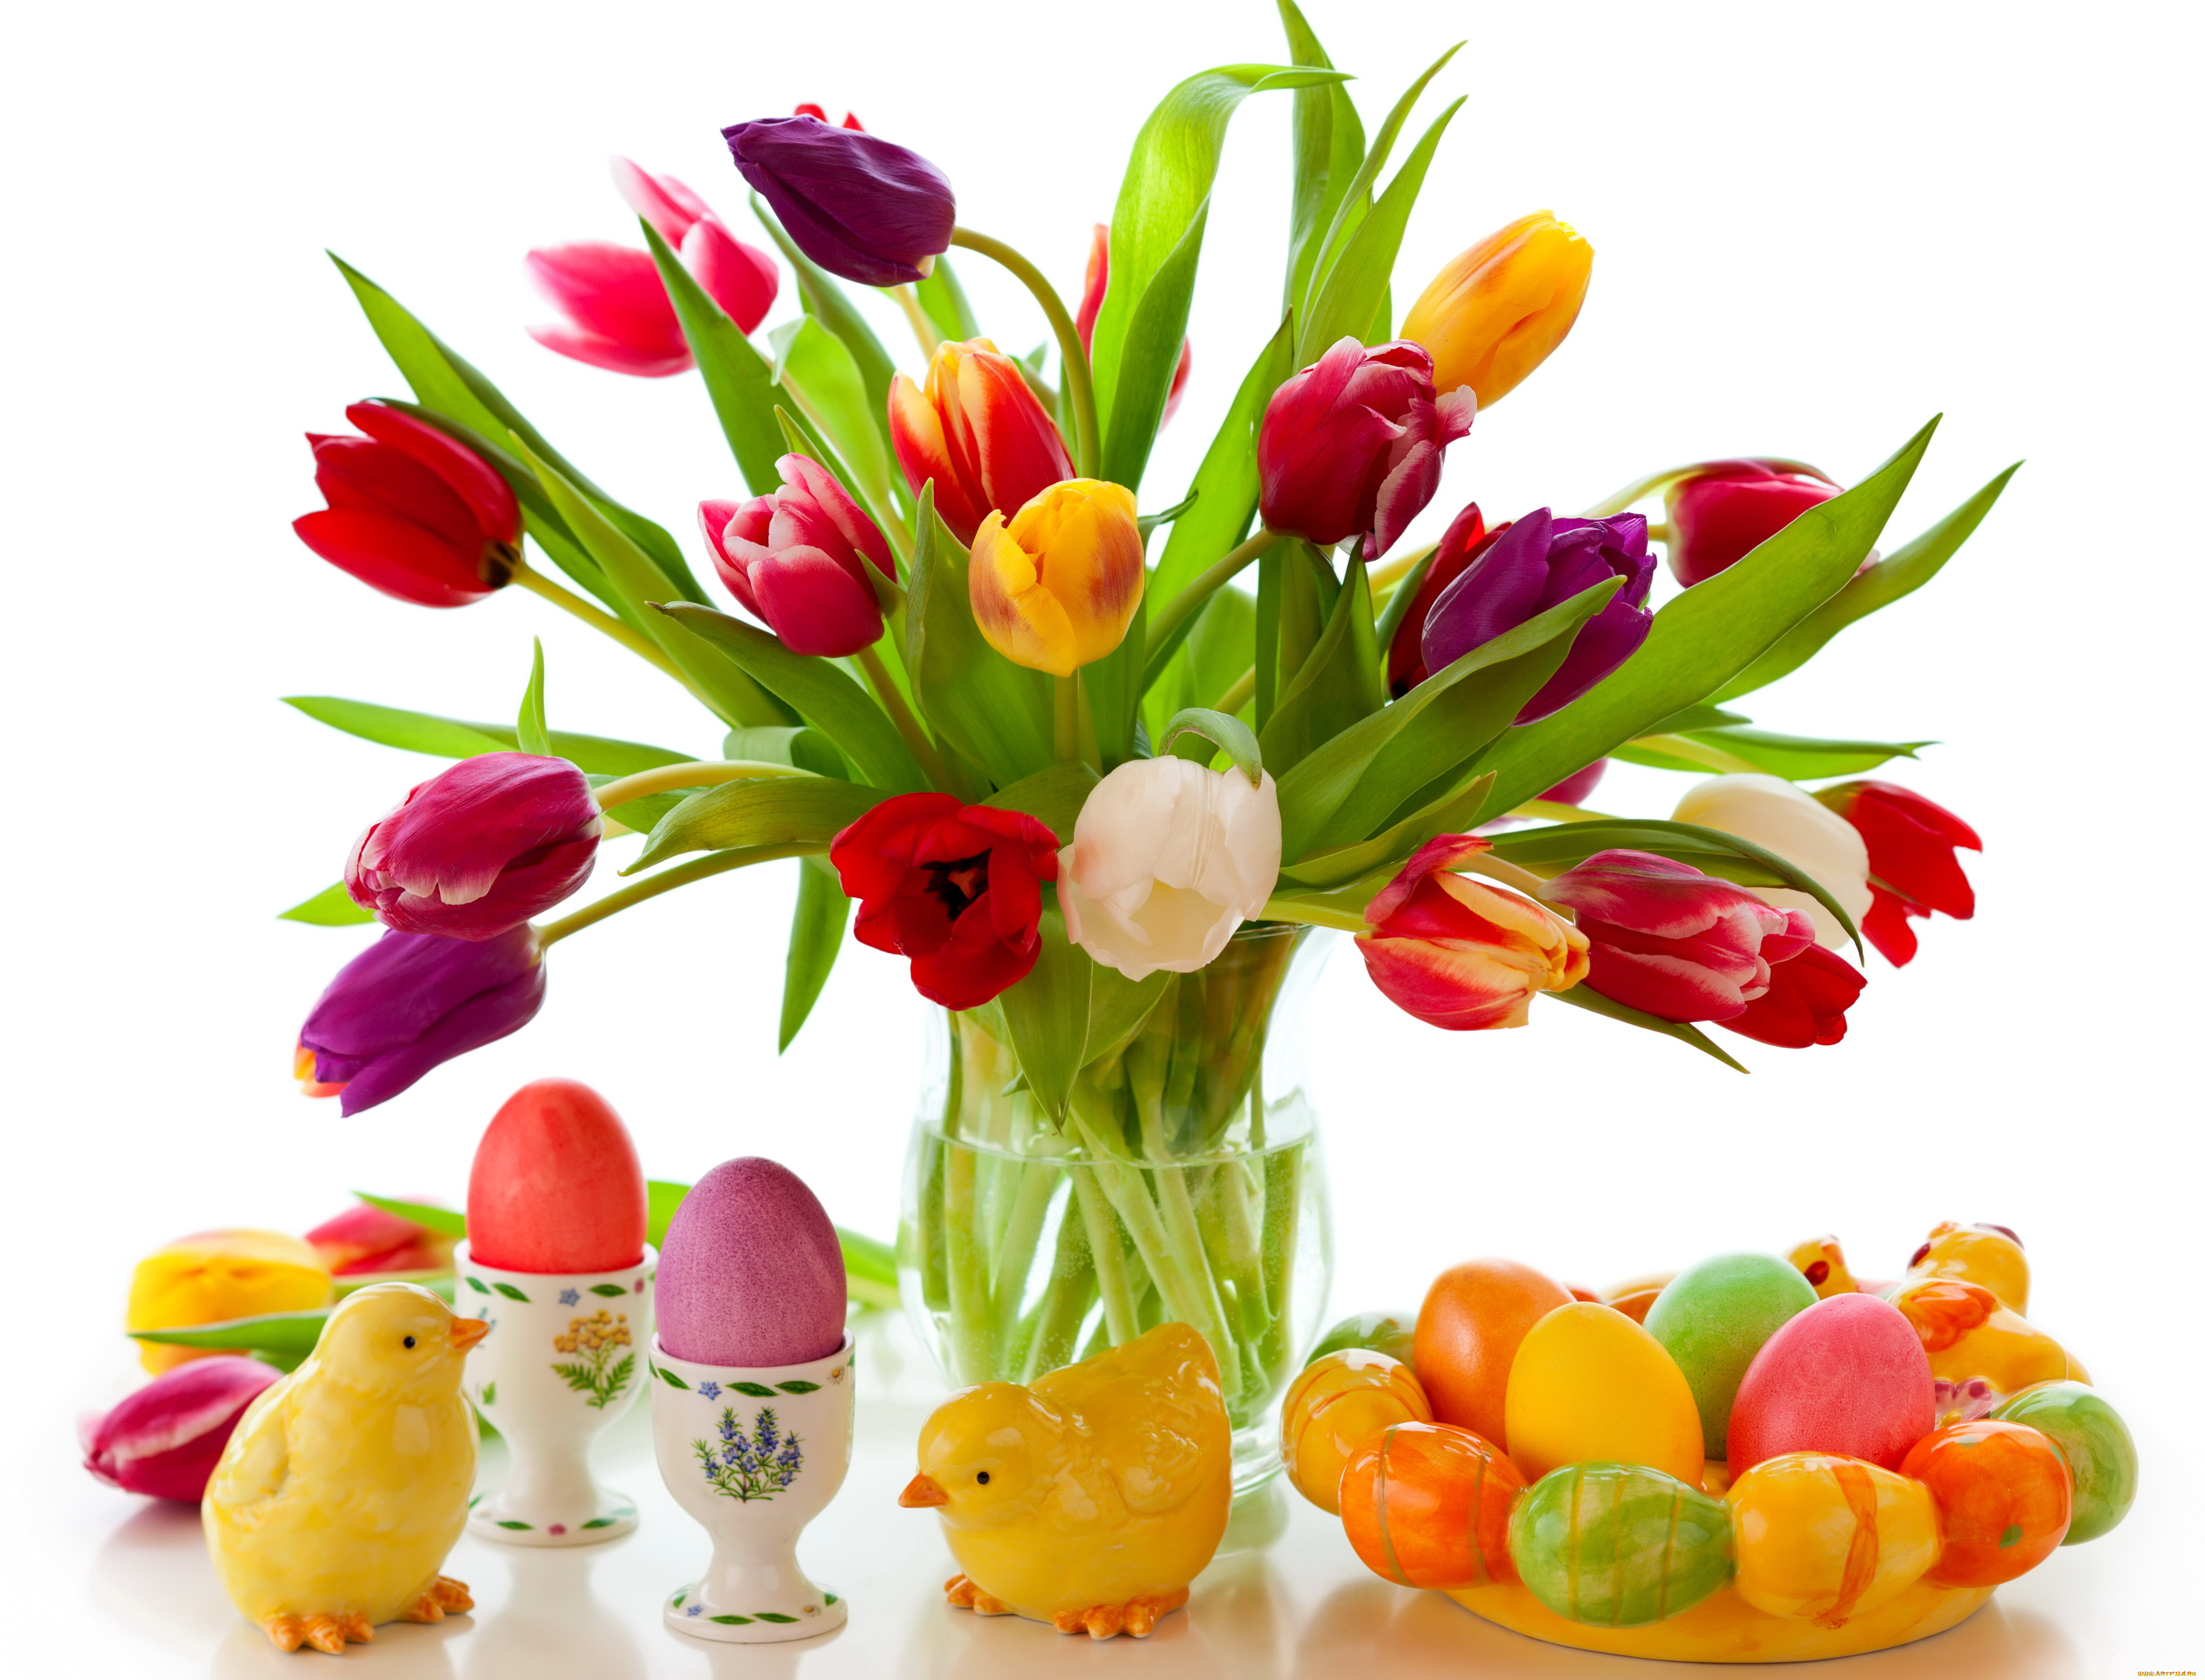 праздничные, пасха, яйца, весна, цветы, тюльпаны, tulips, colorful, eggs, flowers, spring, easter, крашеные